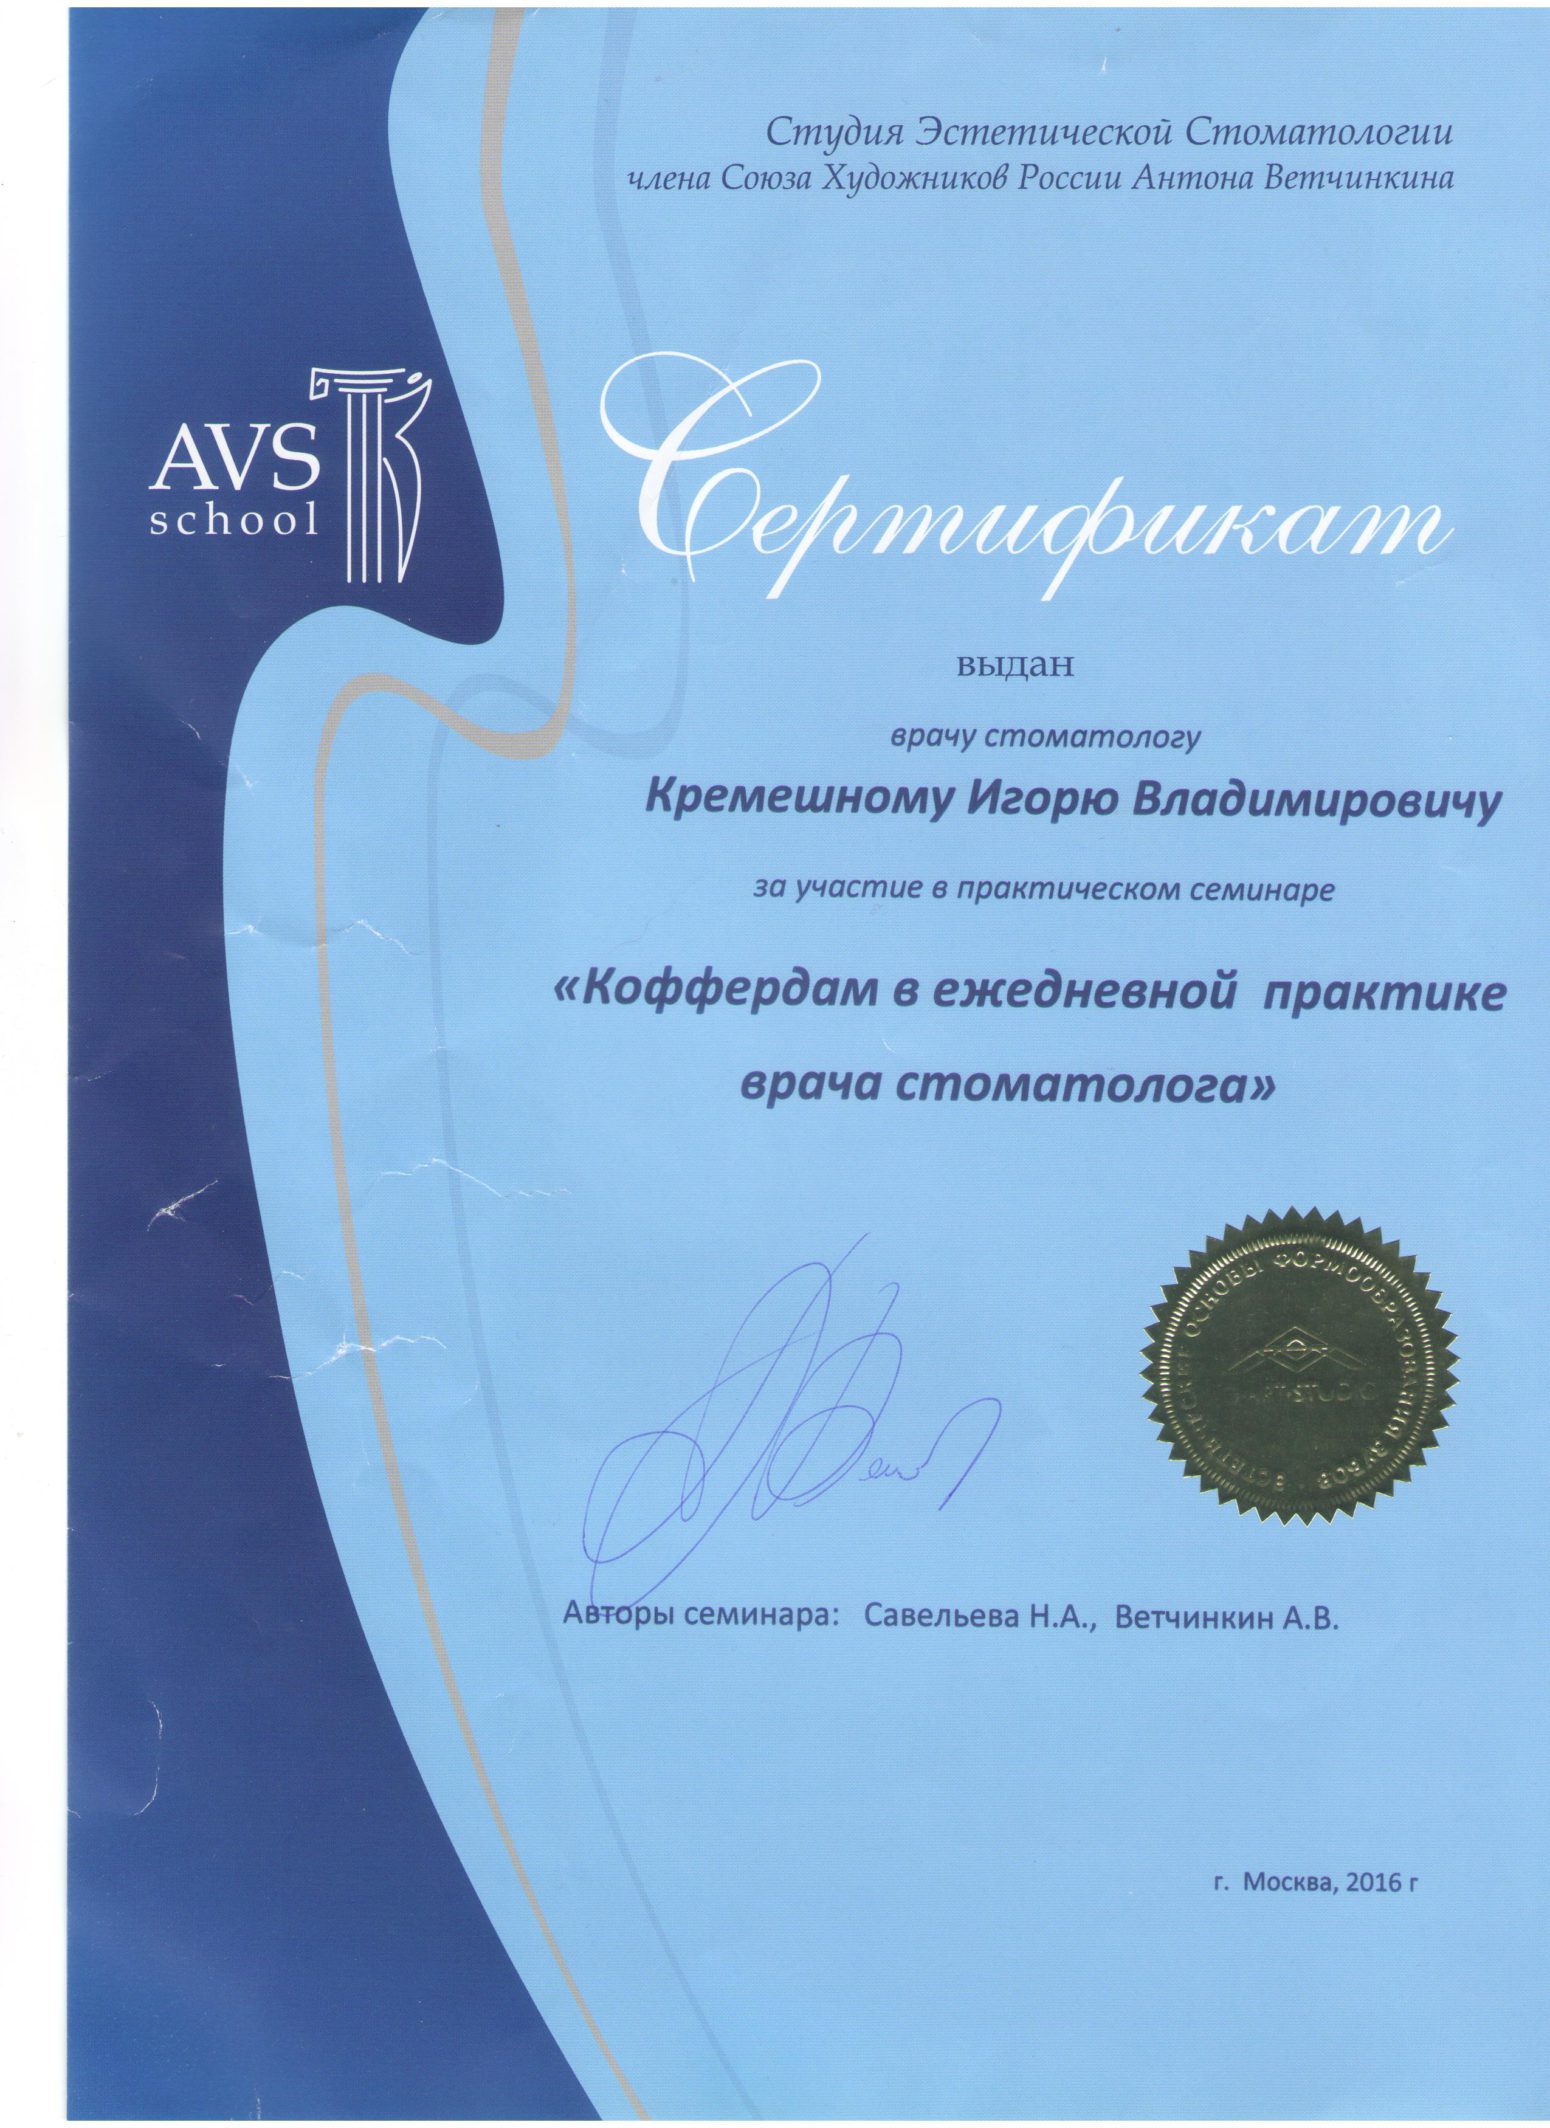 Изображение сертификата Кремешный Игорь Владимирович